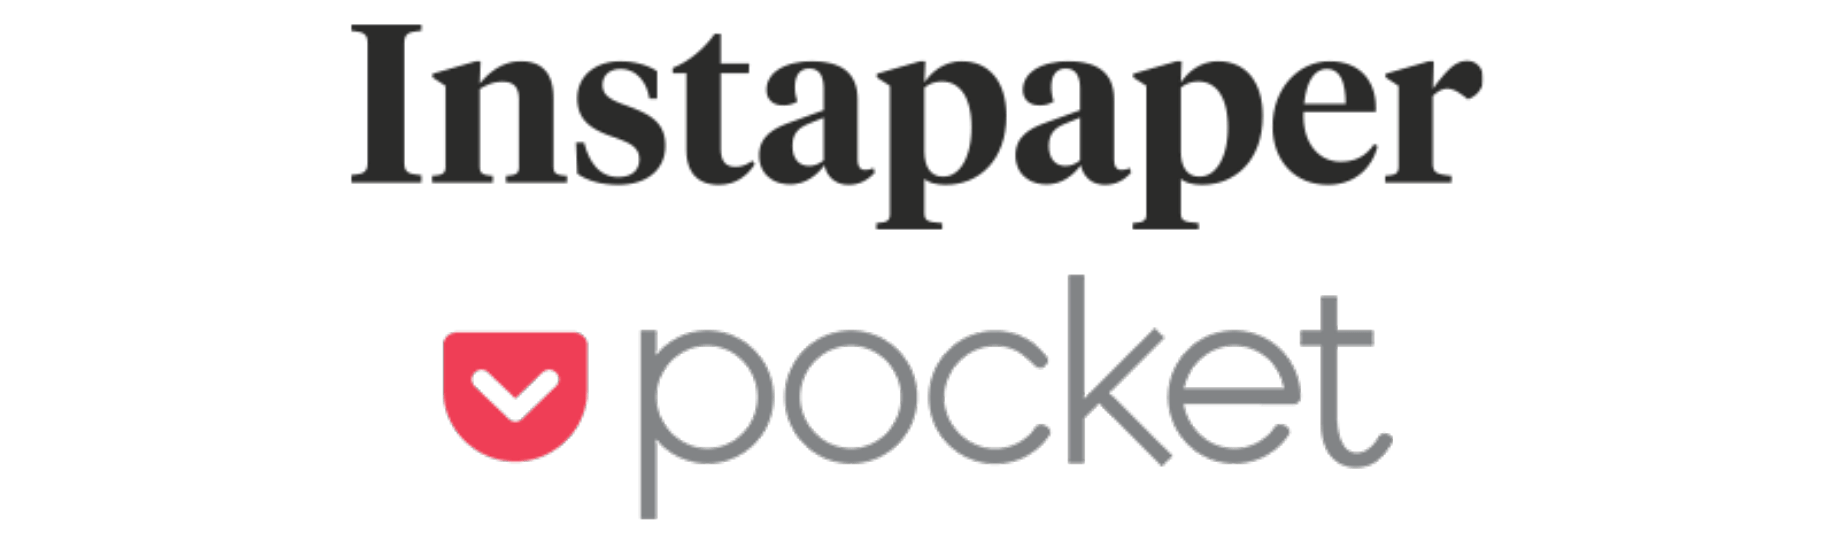 Instapaper Logo - Pocket vs. Instapaper - Adventures in Consumer Technology - Medium